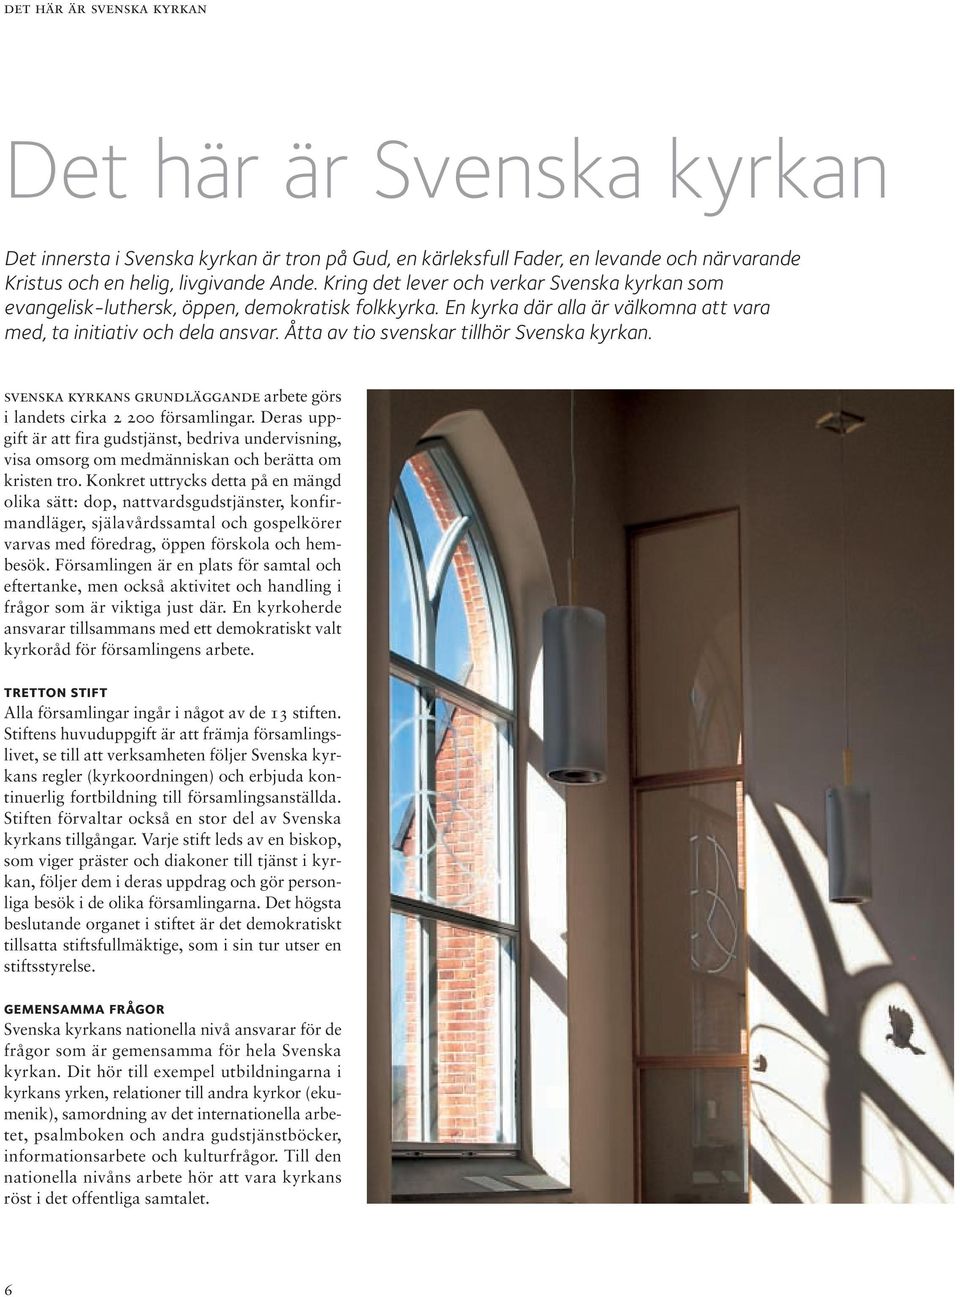 Åtta av tio svenskar tillhör Svenska kyrkan. svenska kyrkans grundläggande arbete görs i landets cirka 2 200 församlingar.